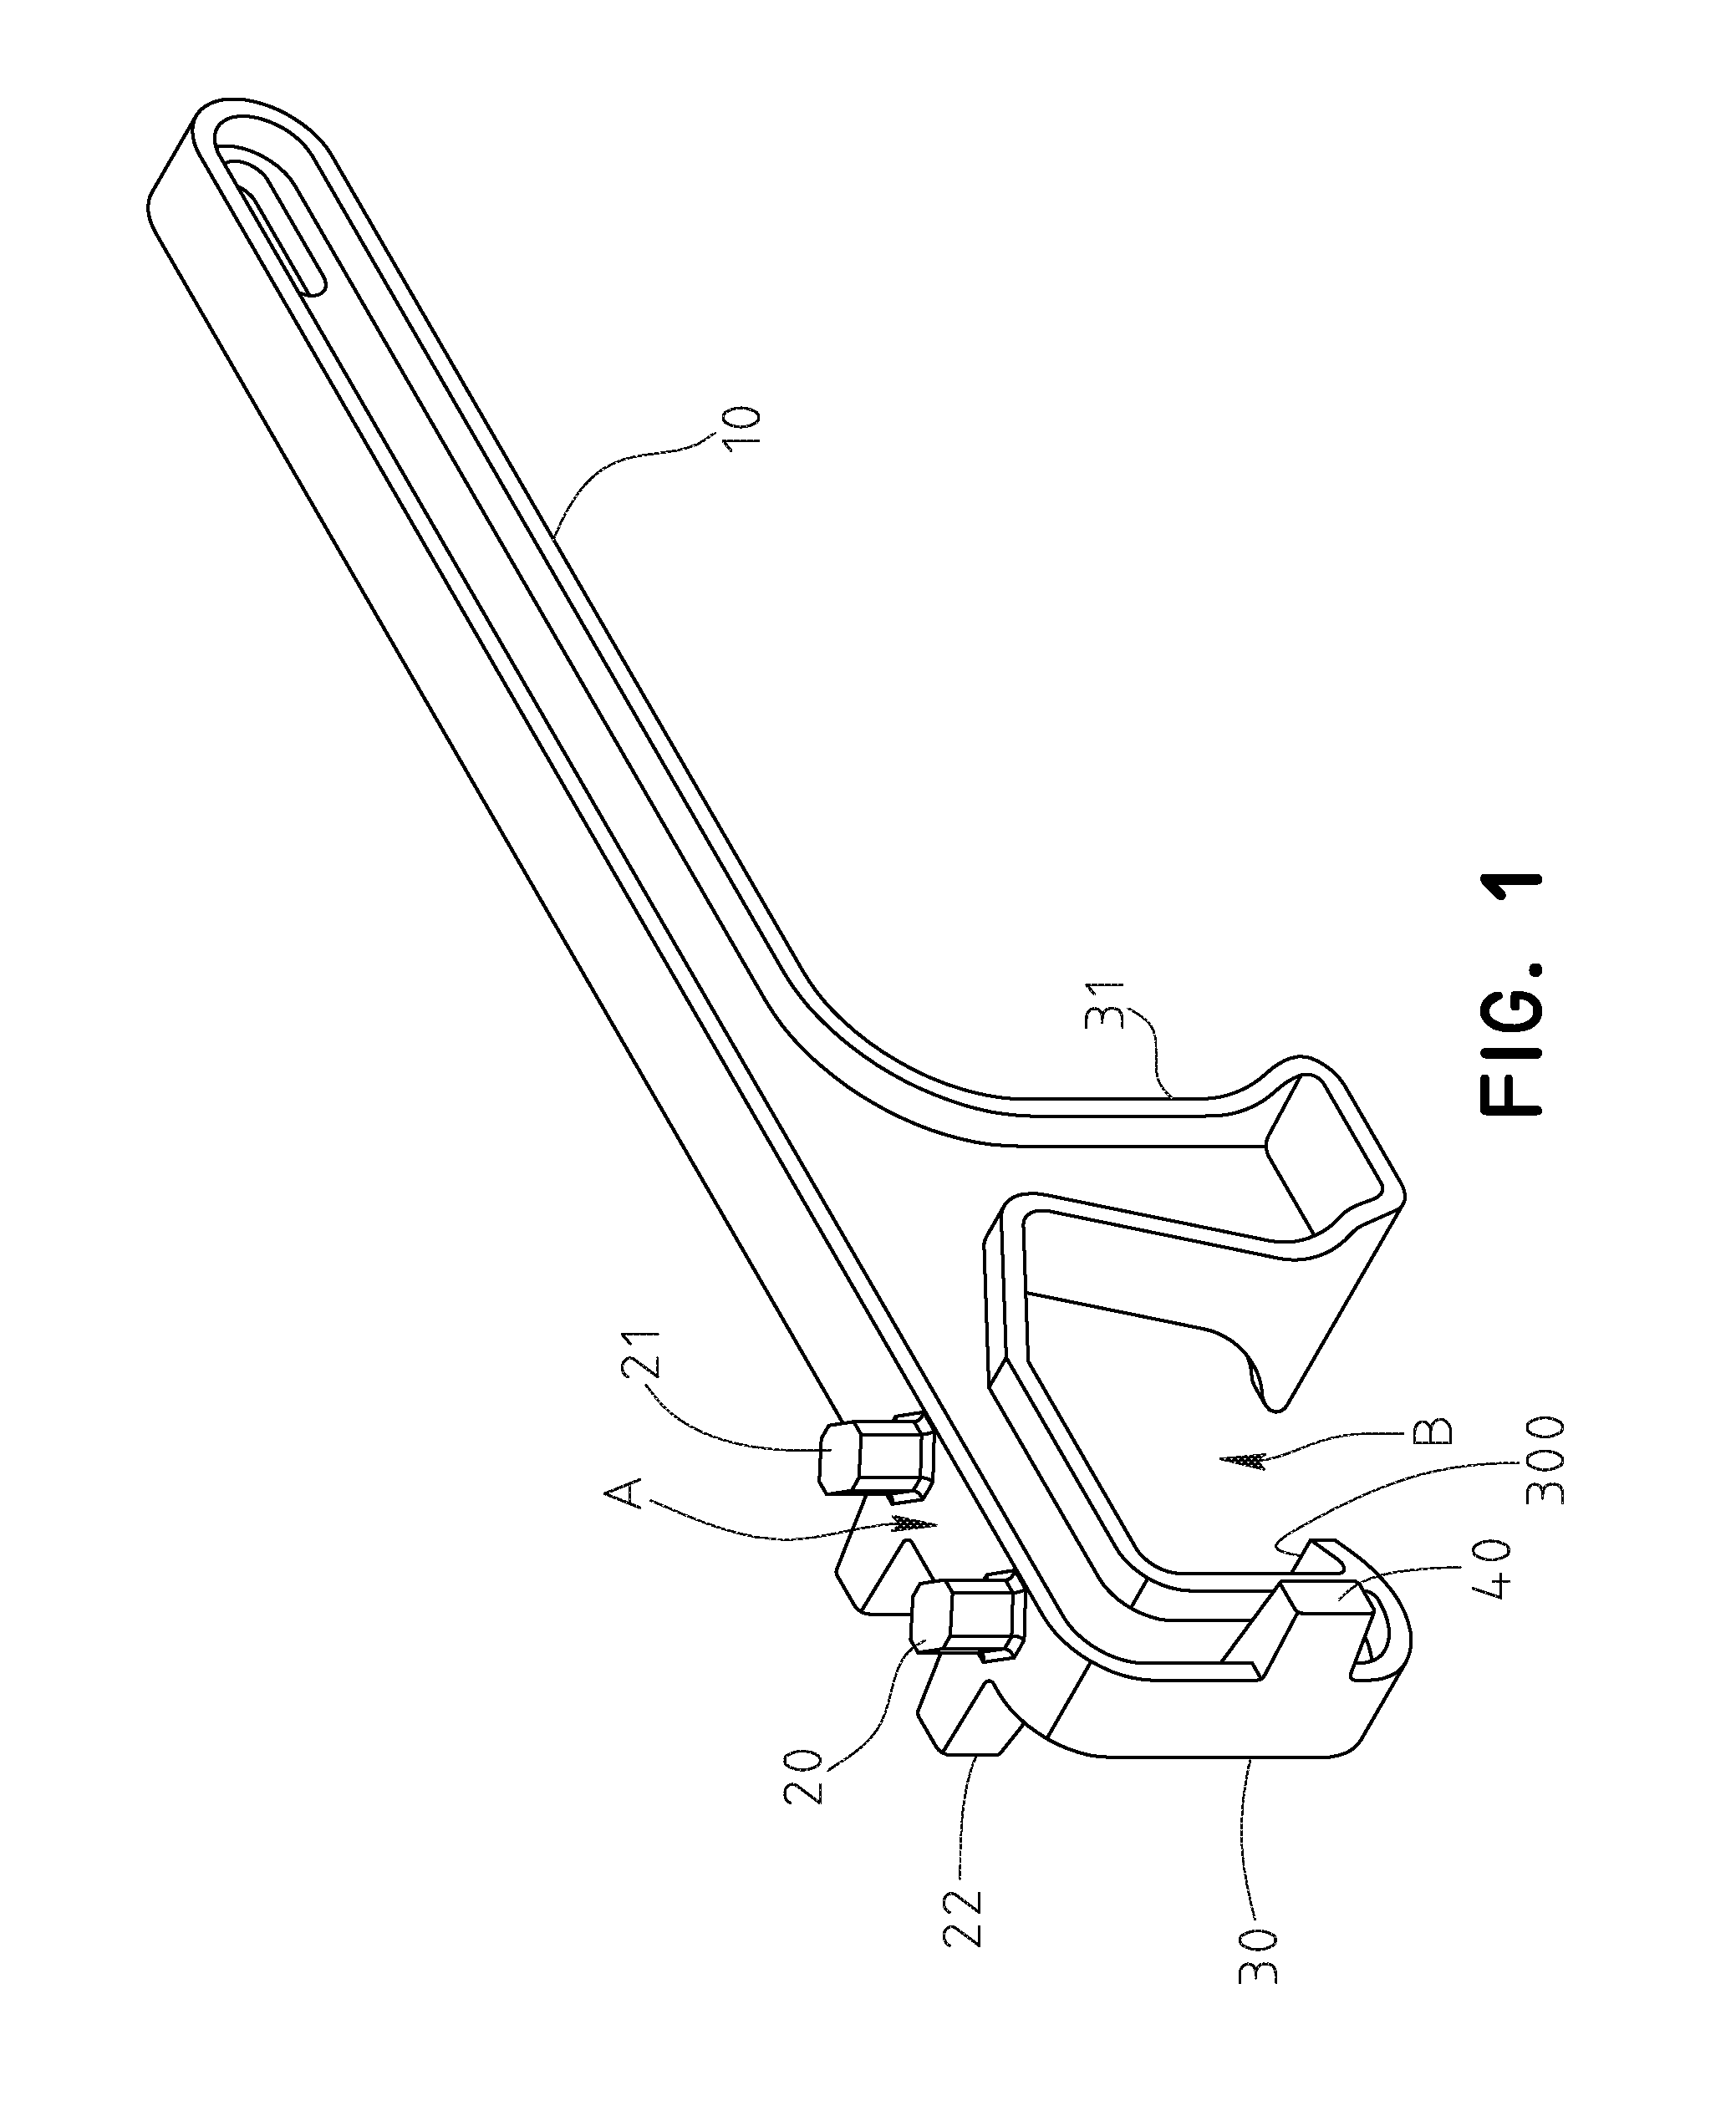 Universal barrel opener